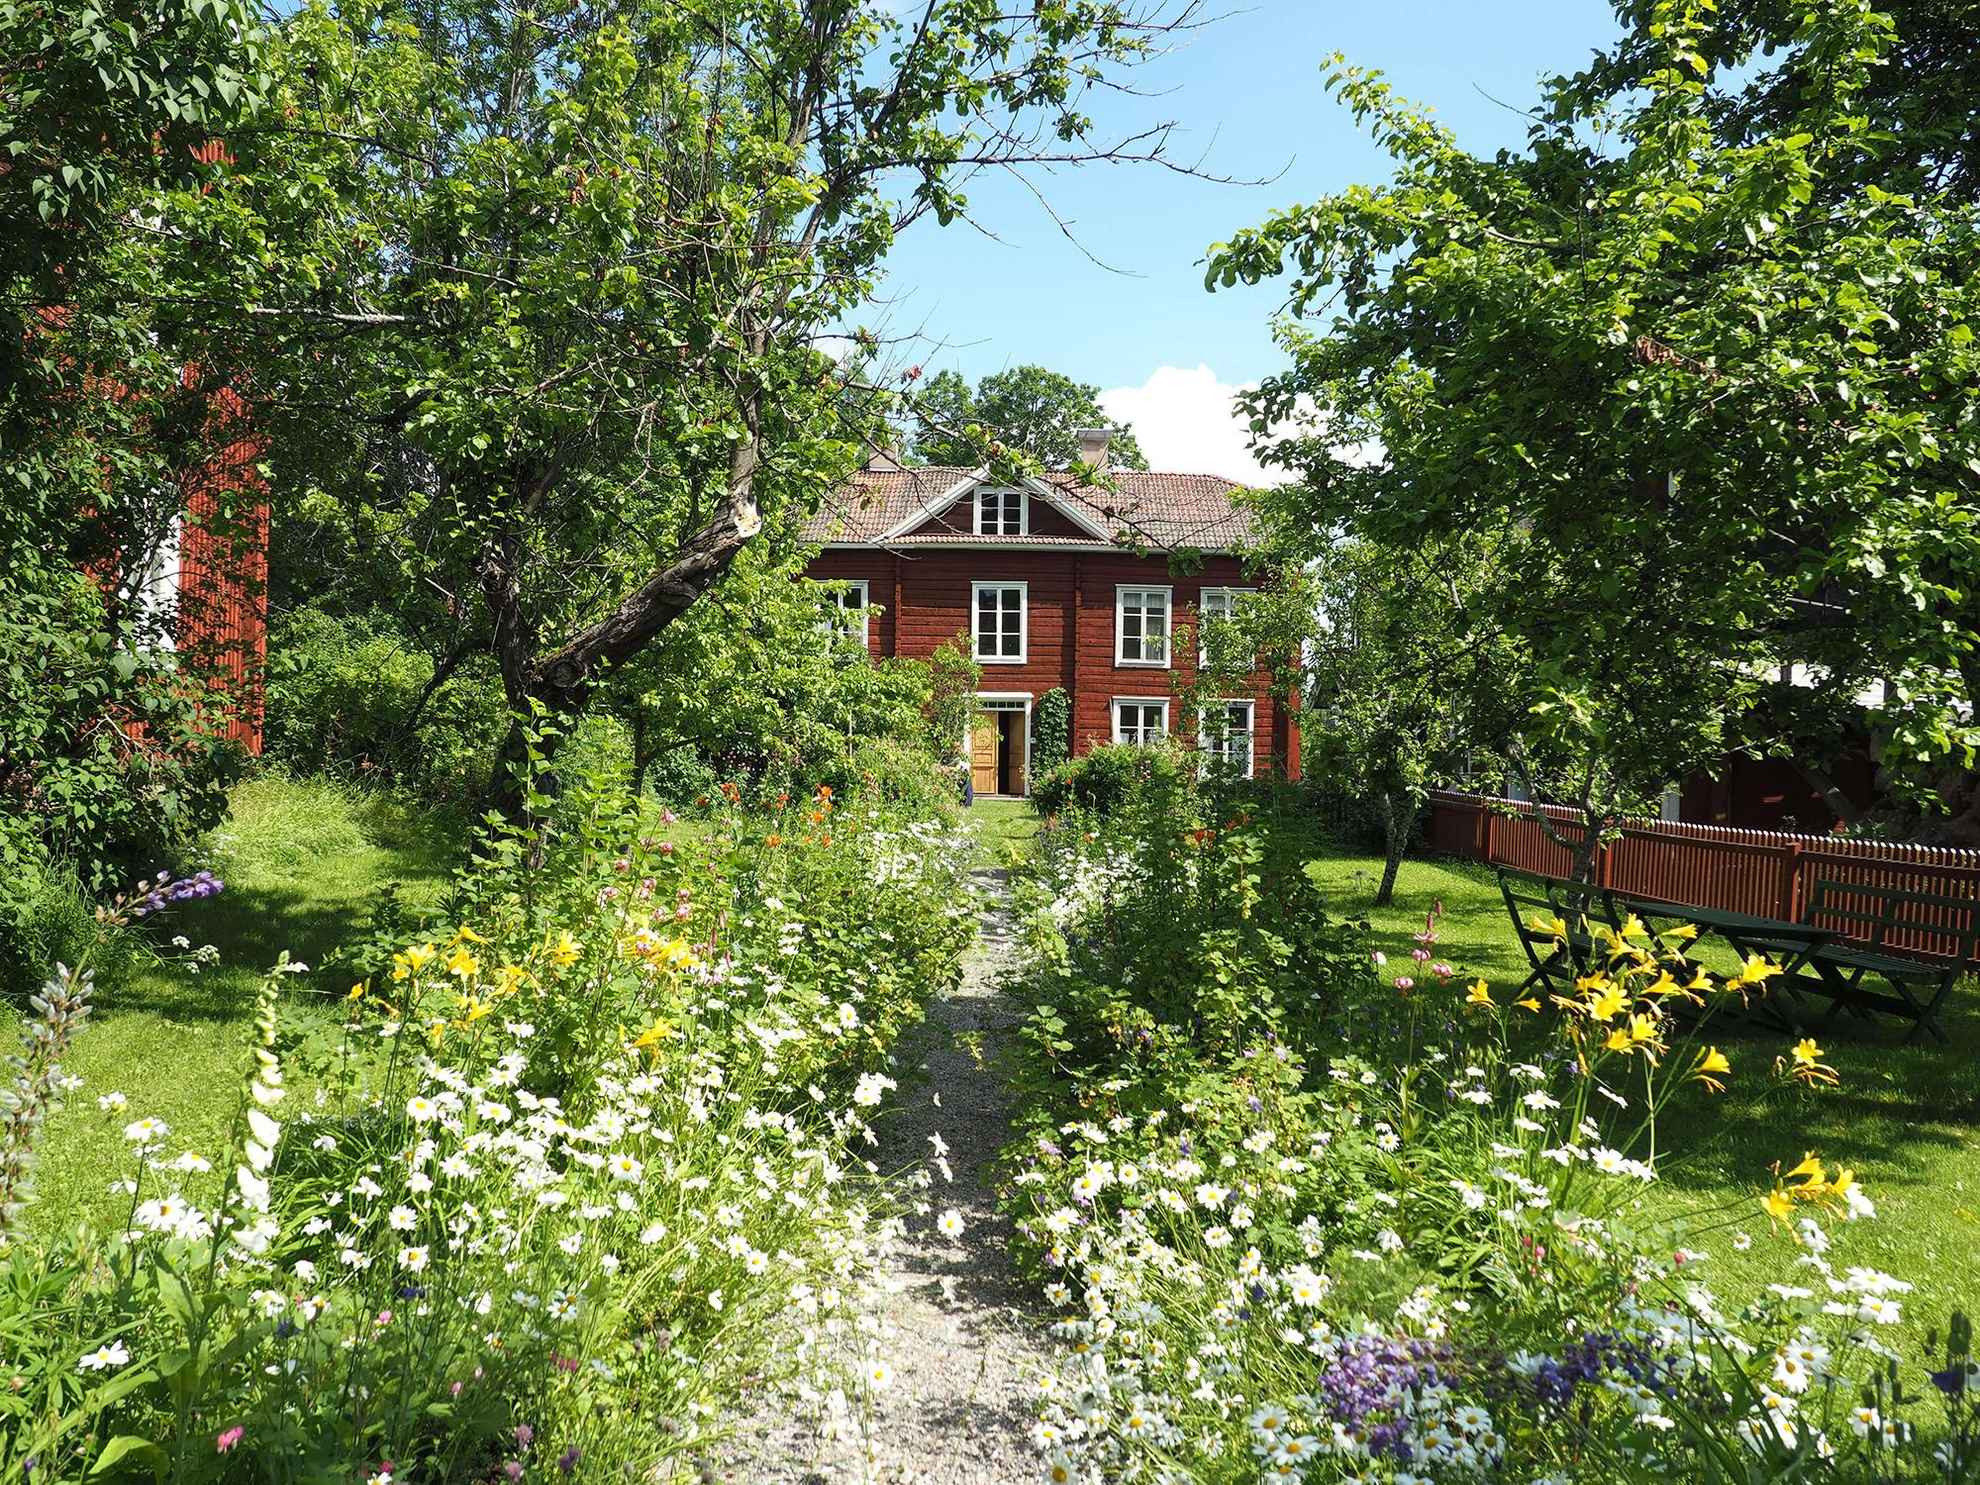 Ein Schotterweg mit blühenden Blumen auf jeder Seite führt zu einem roten Holzhaus. Auf dem grünen Rasen befinden sich Gartenmöbel und Bäume.